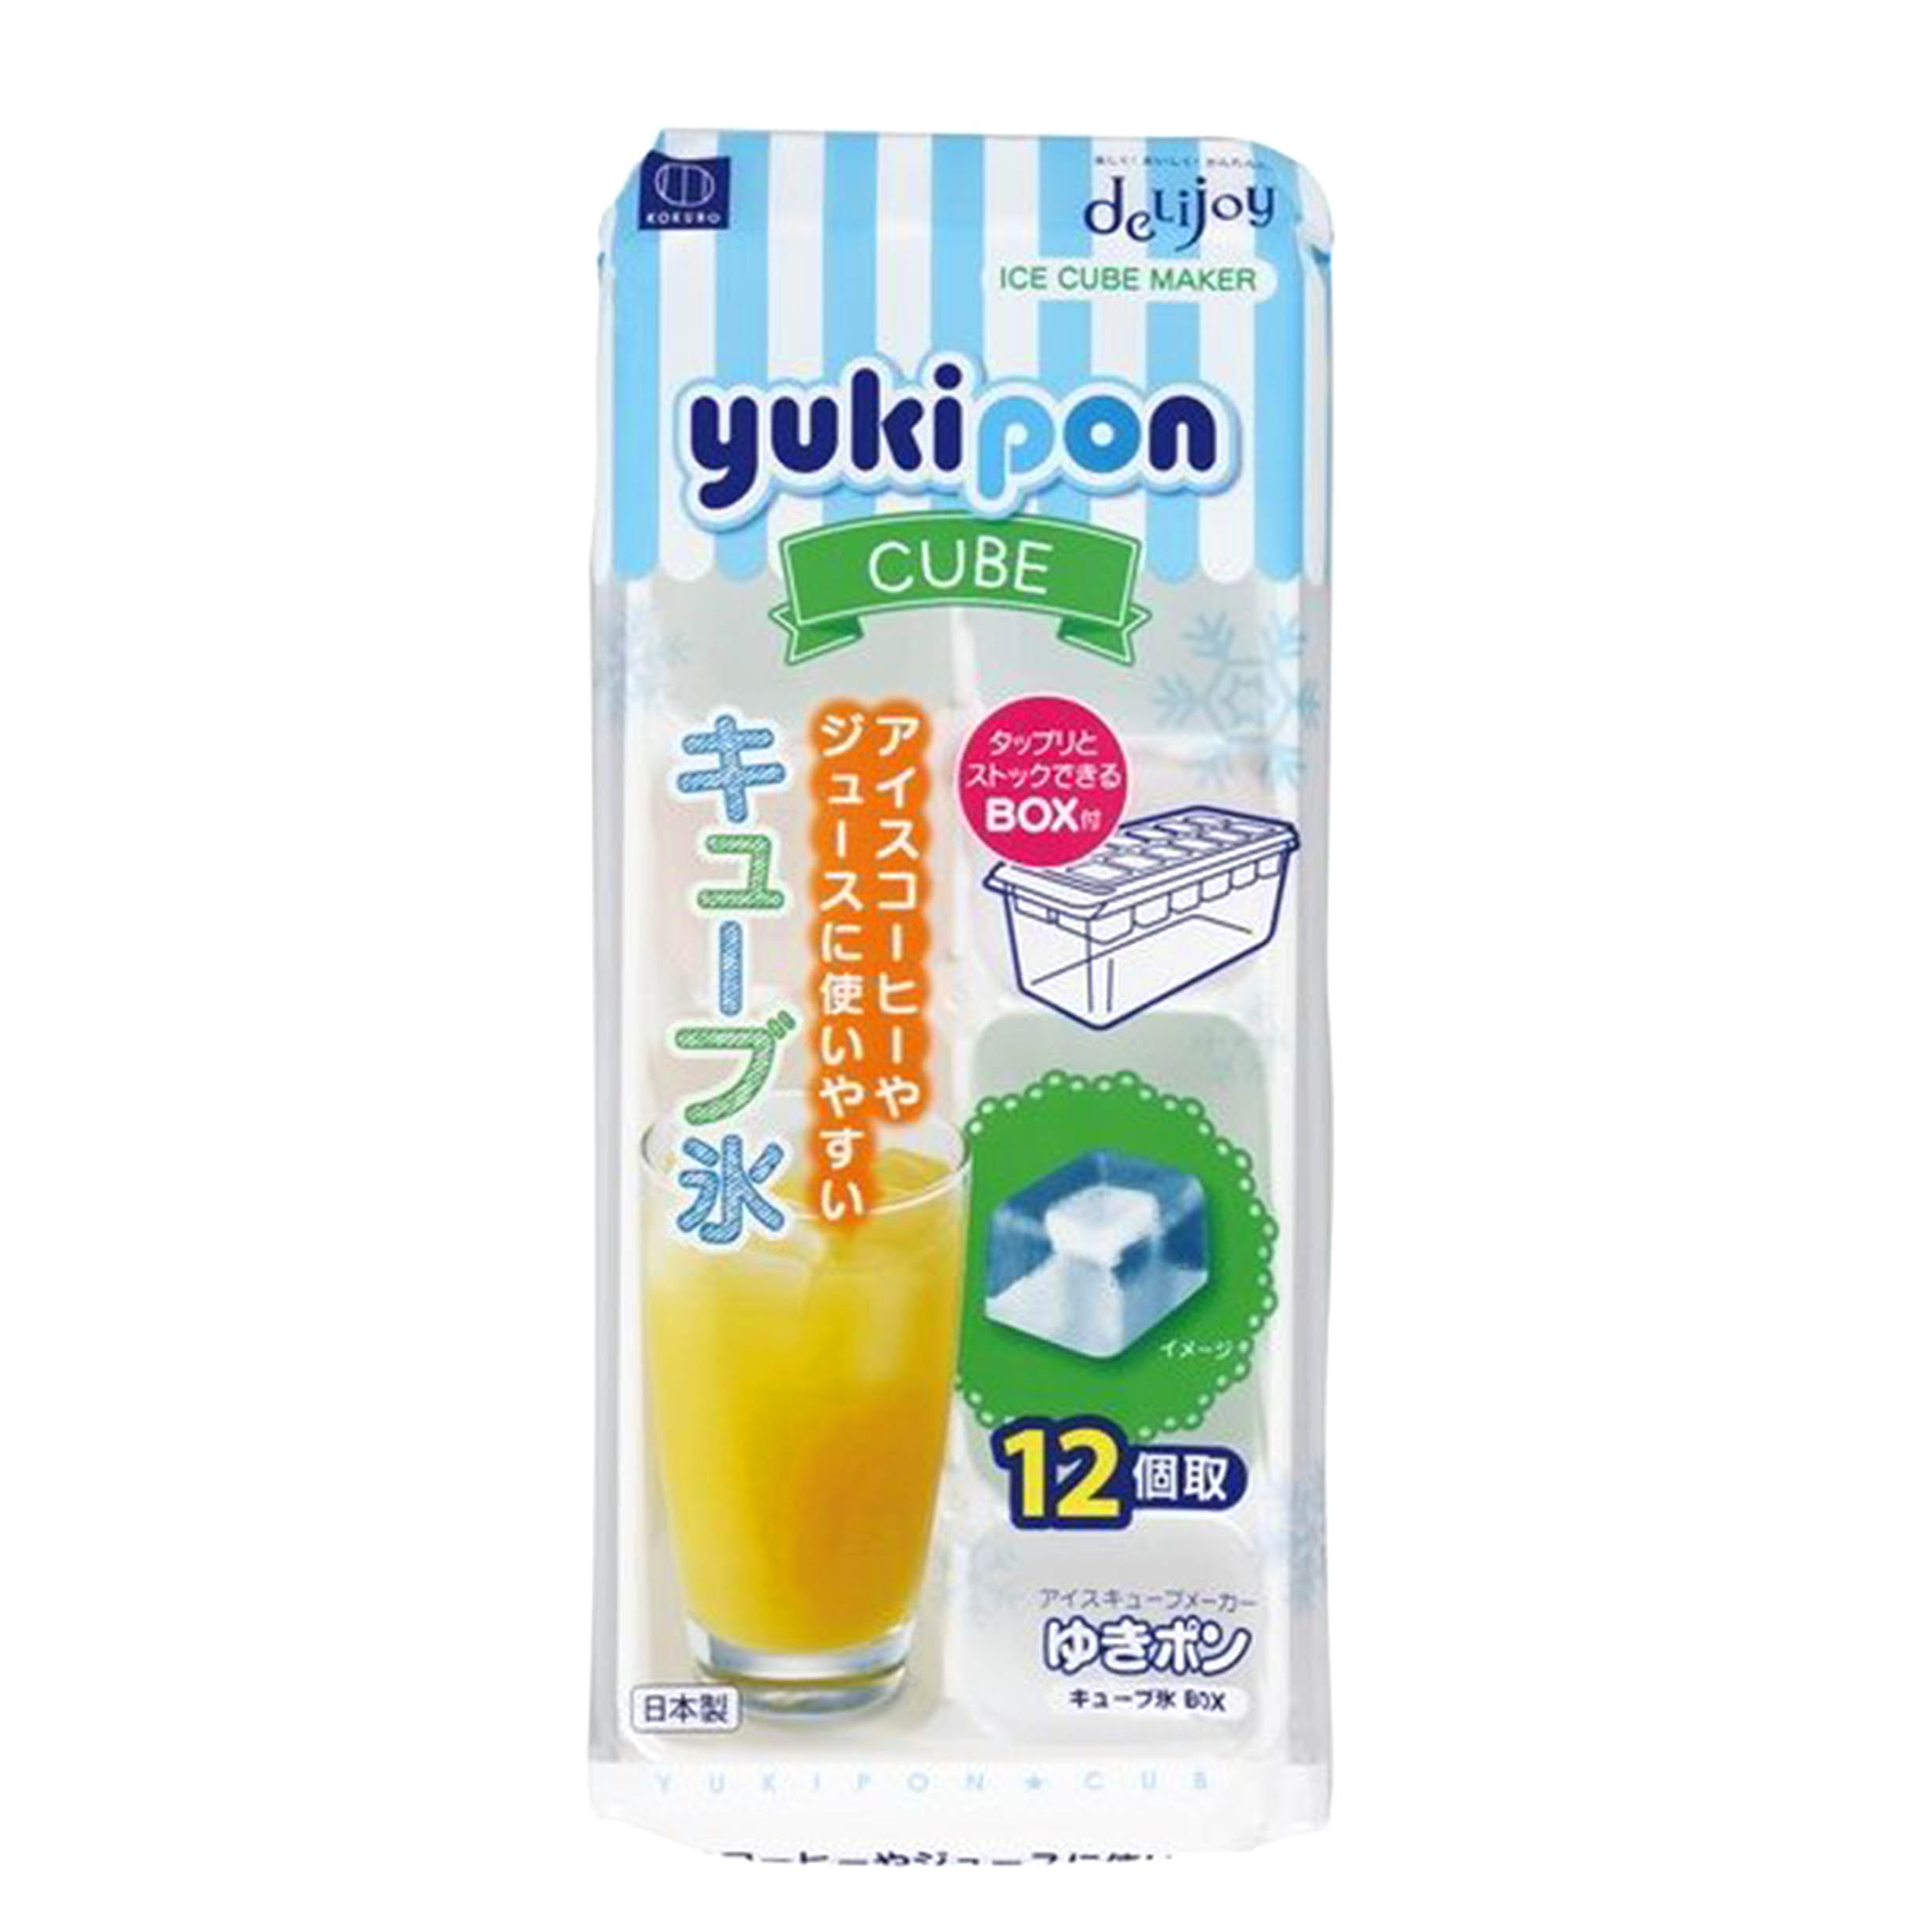 方型製冰盒-附收納盒 yukipon CUBE KK-219 小久保工業所 KOKUBO 日本製造進口